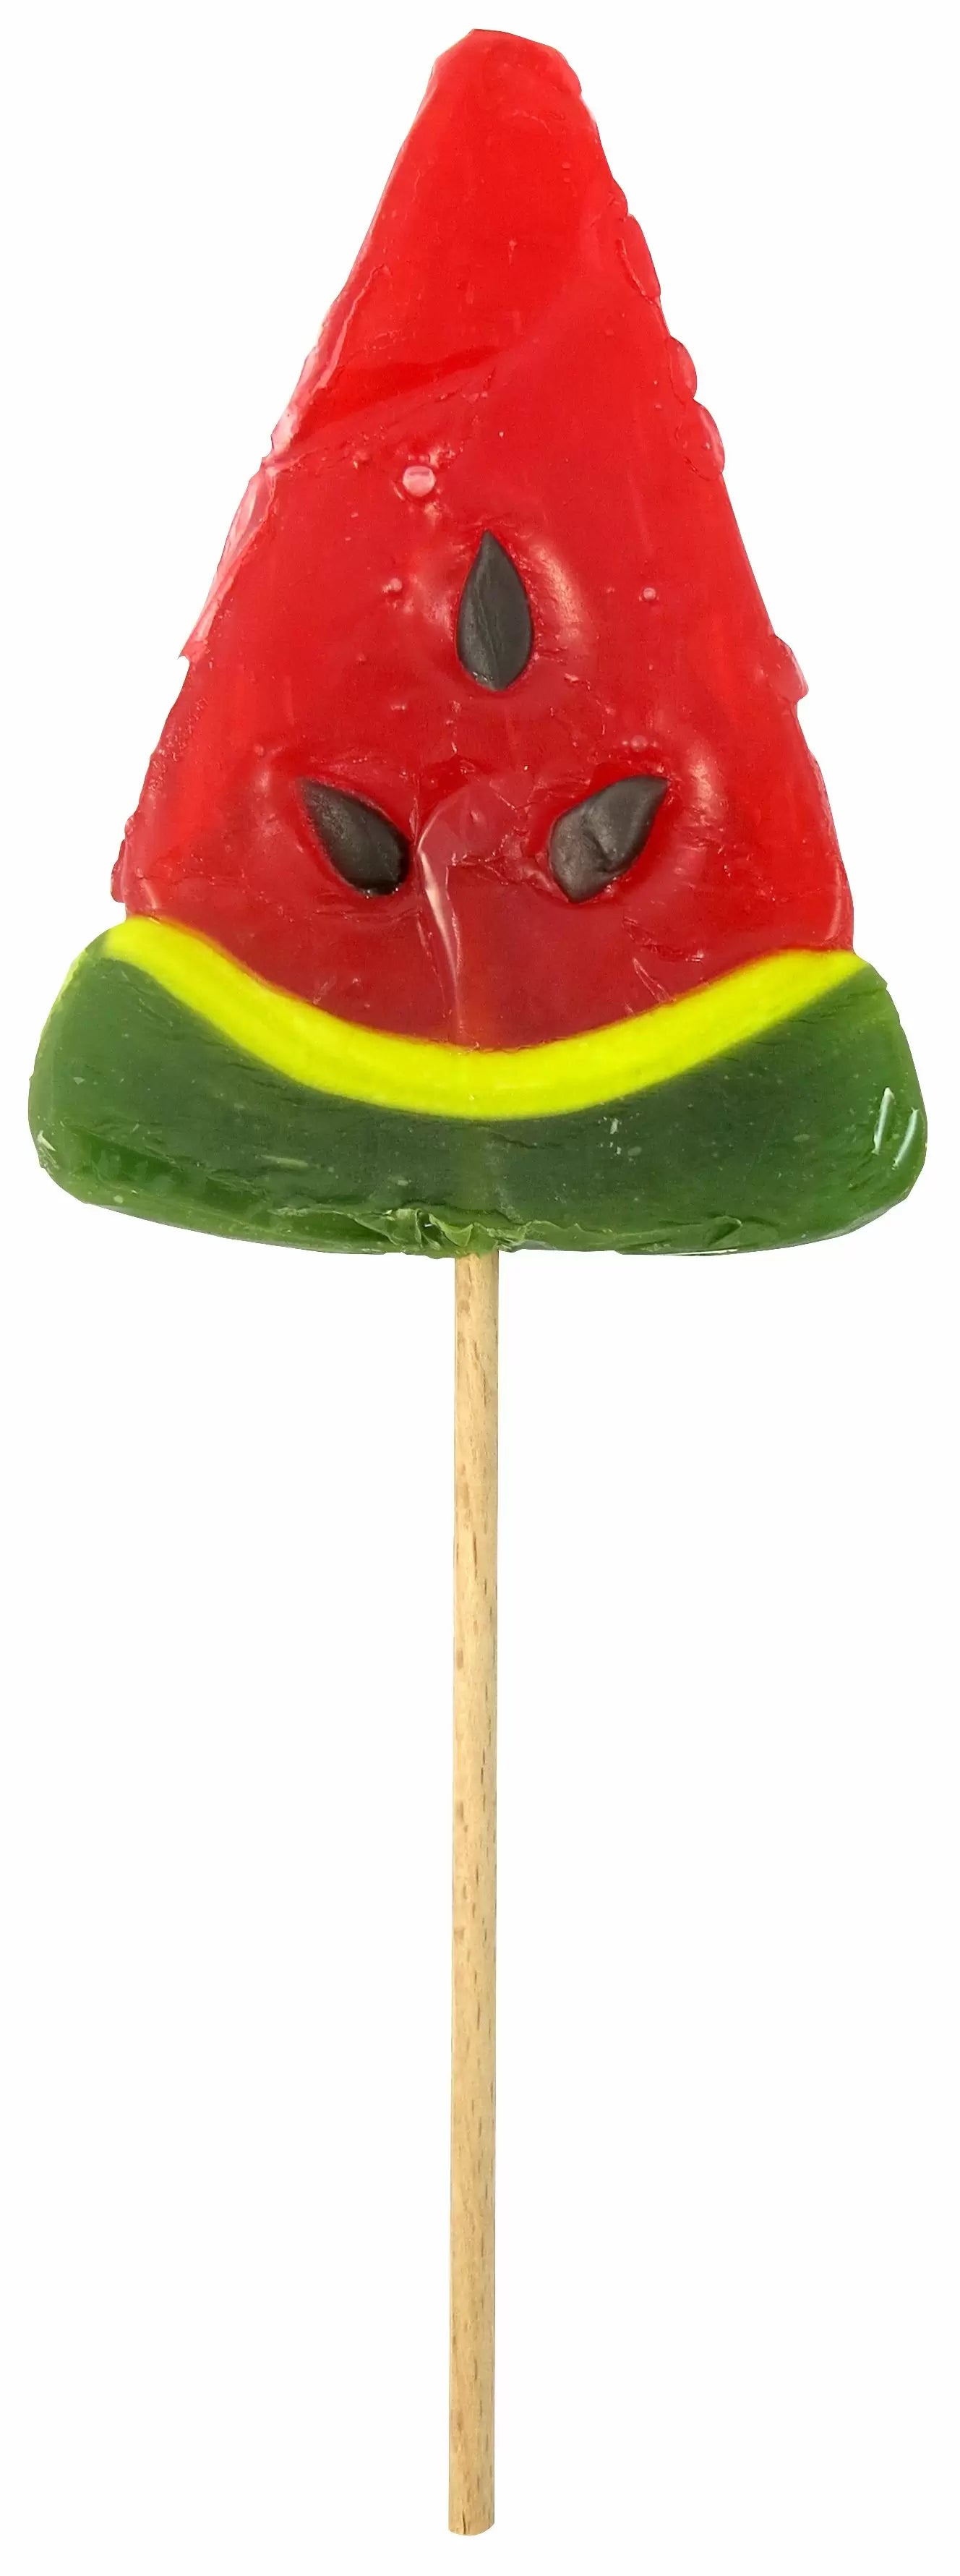 Watermelon Wedge Lollipop